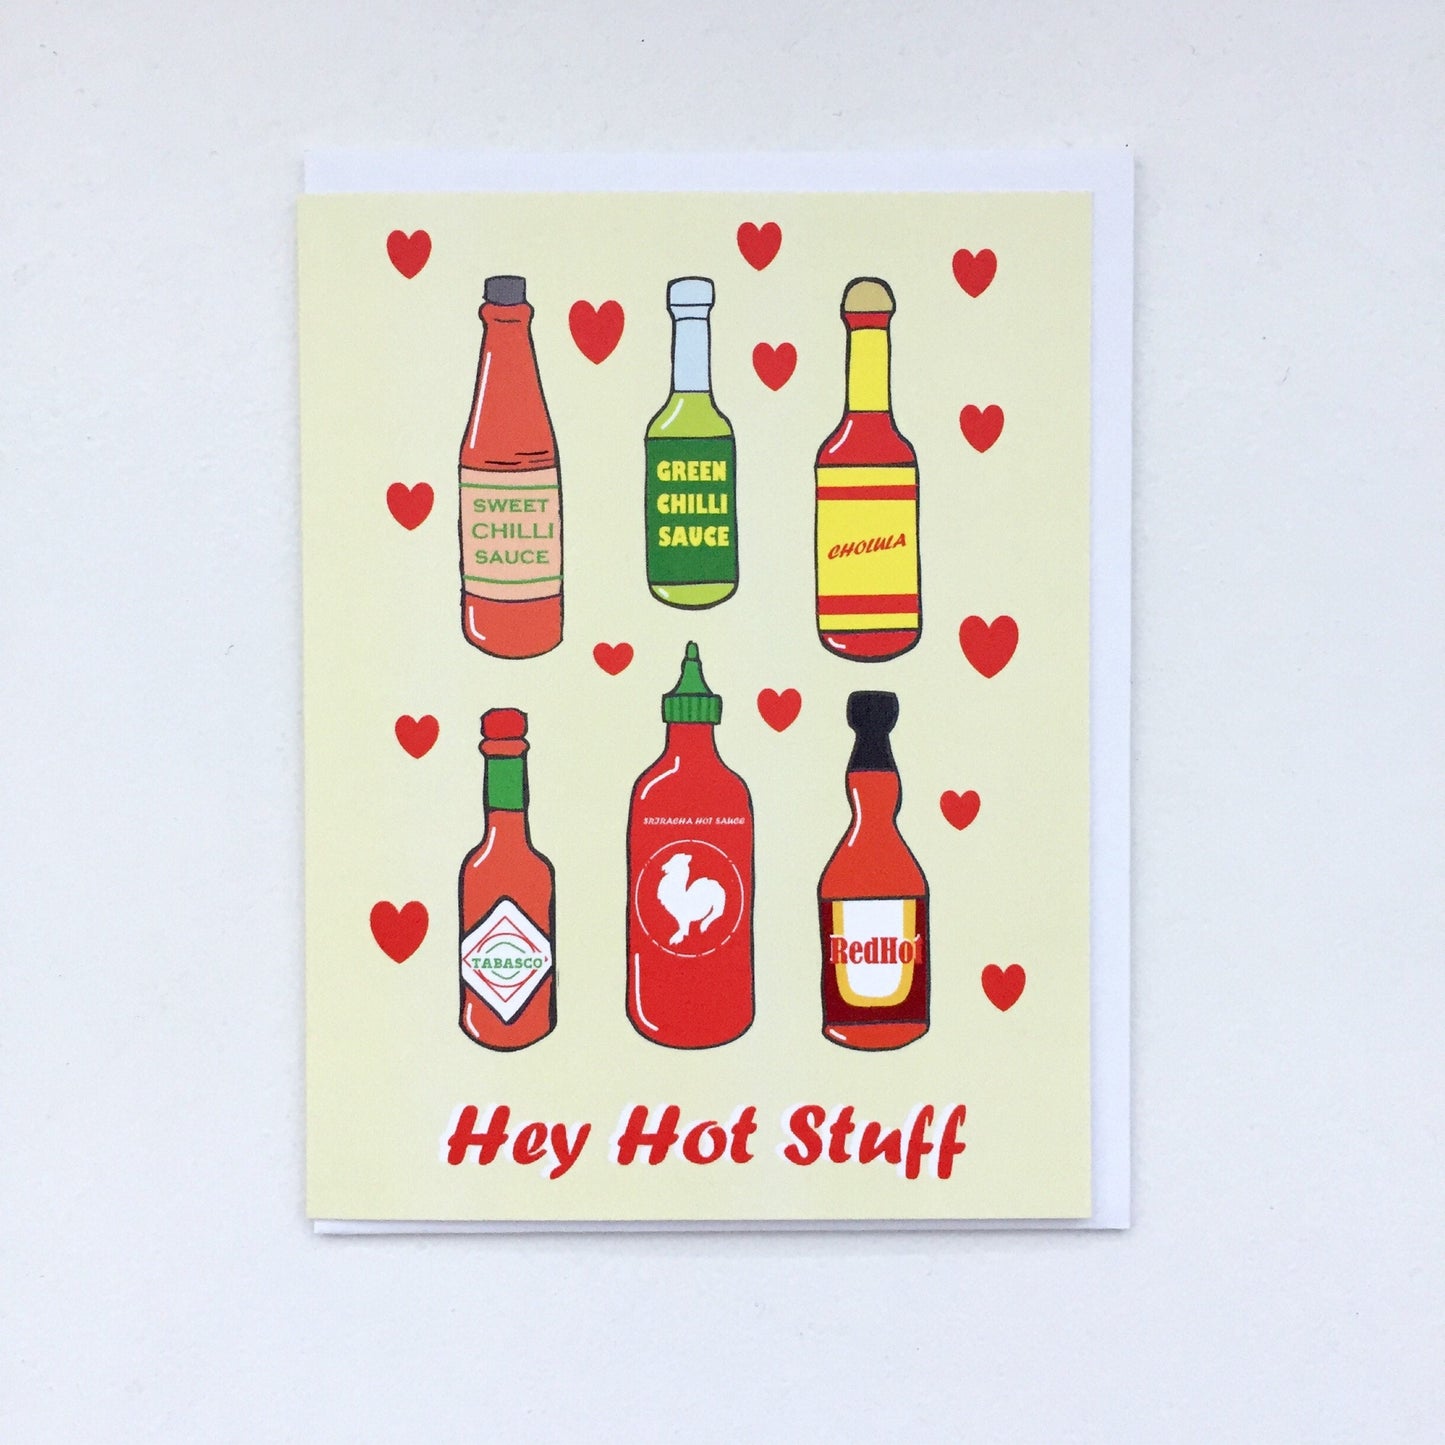 Hot Sauce Card - Sriracha Card, Tobasco Chili Sauce Card, Hot Sauce Label, Hot Sauce in my Bag, Hot Sauce Graphic, Sriracha Art